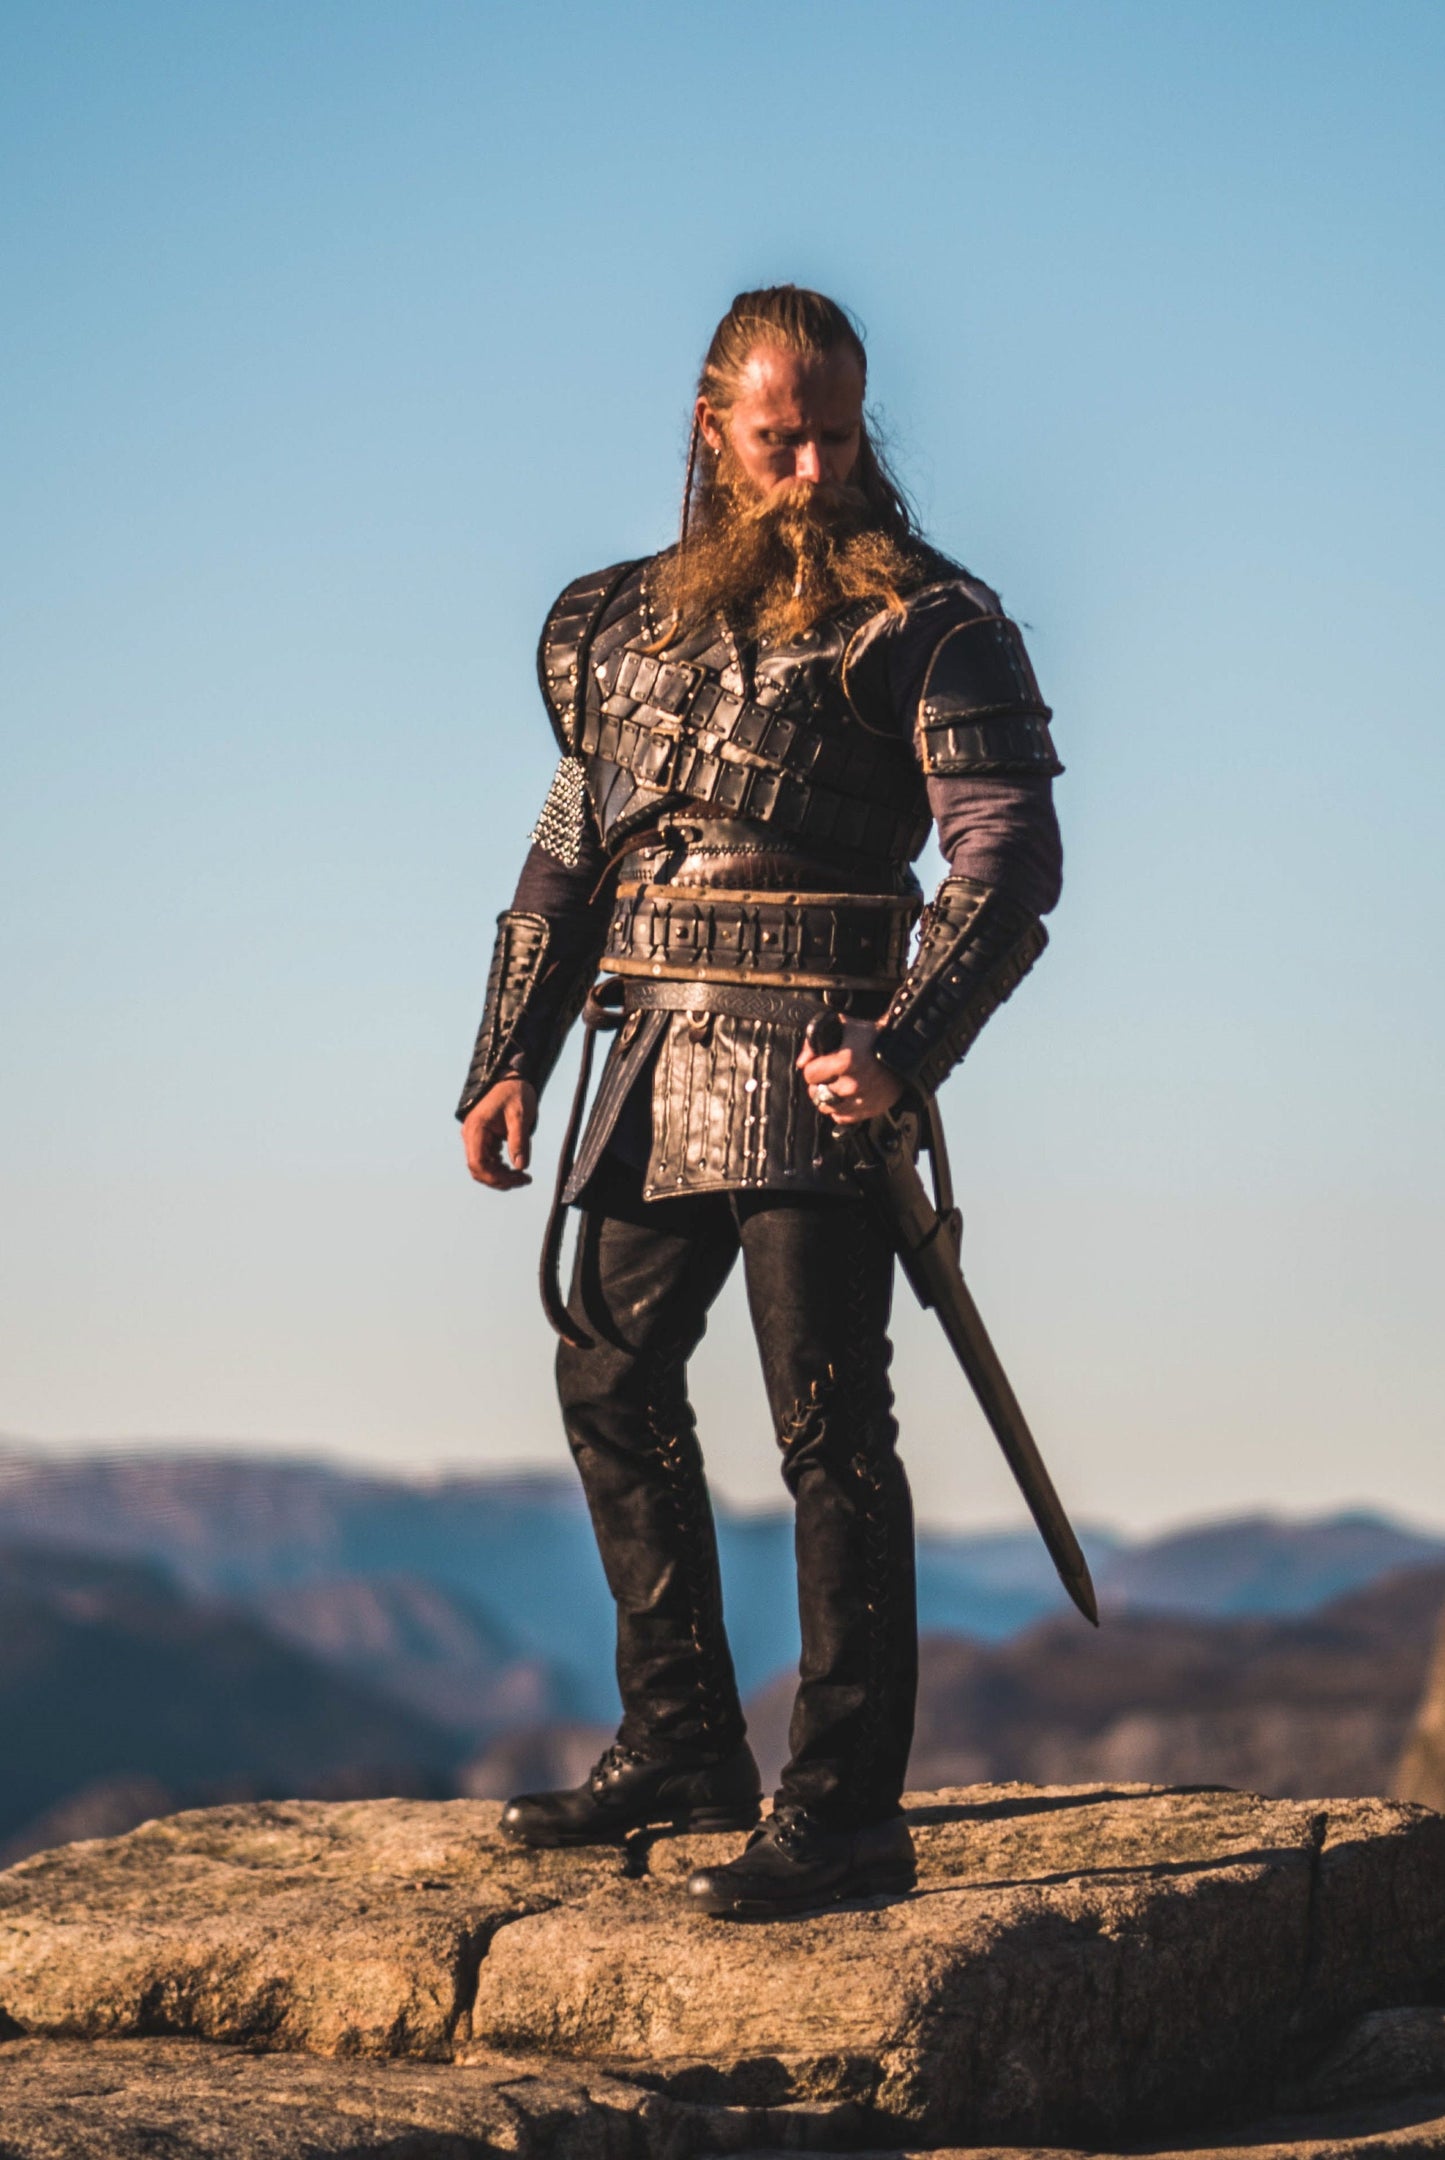 Request for ivar the boneless from vikings : r/SoulsSliders